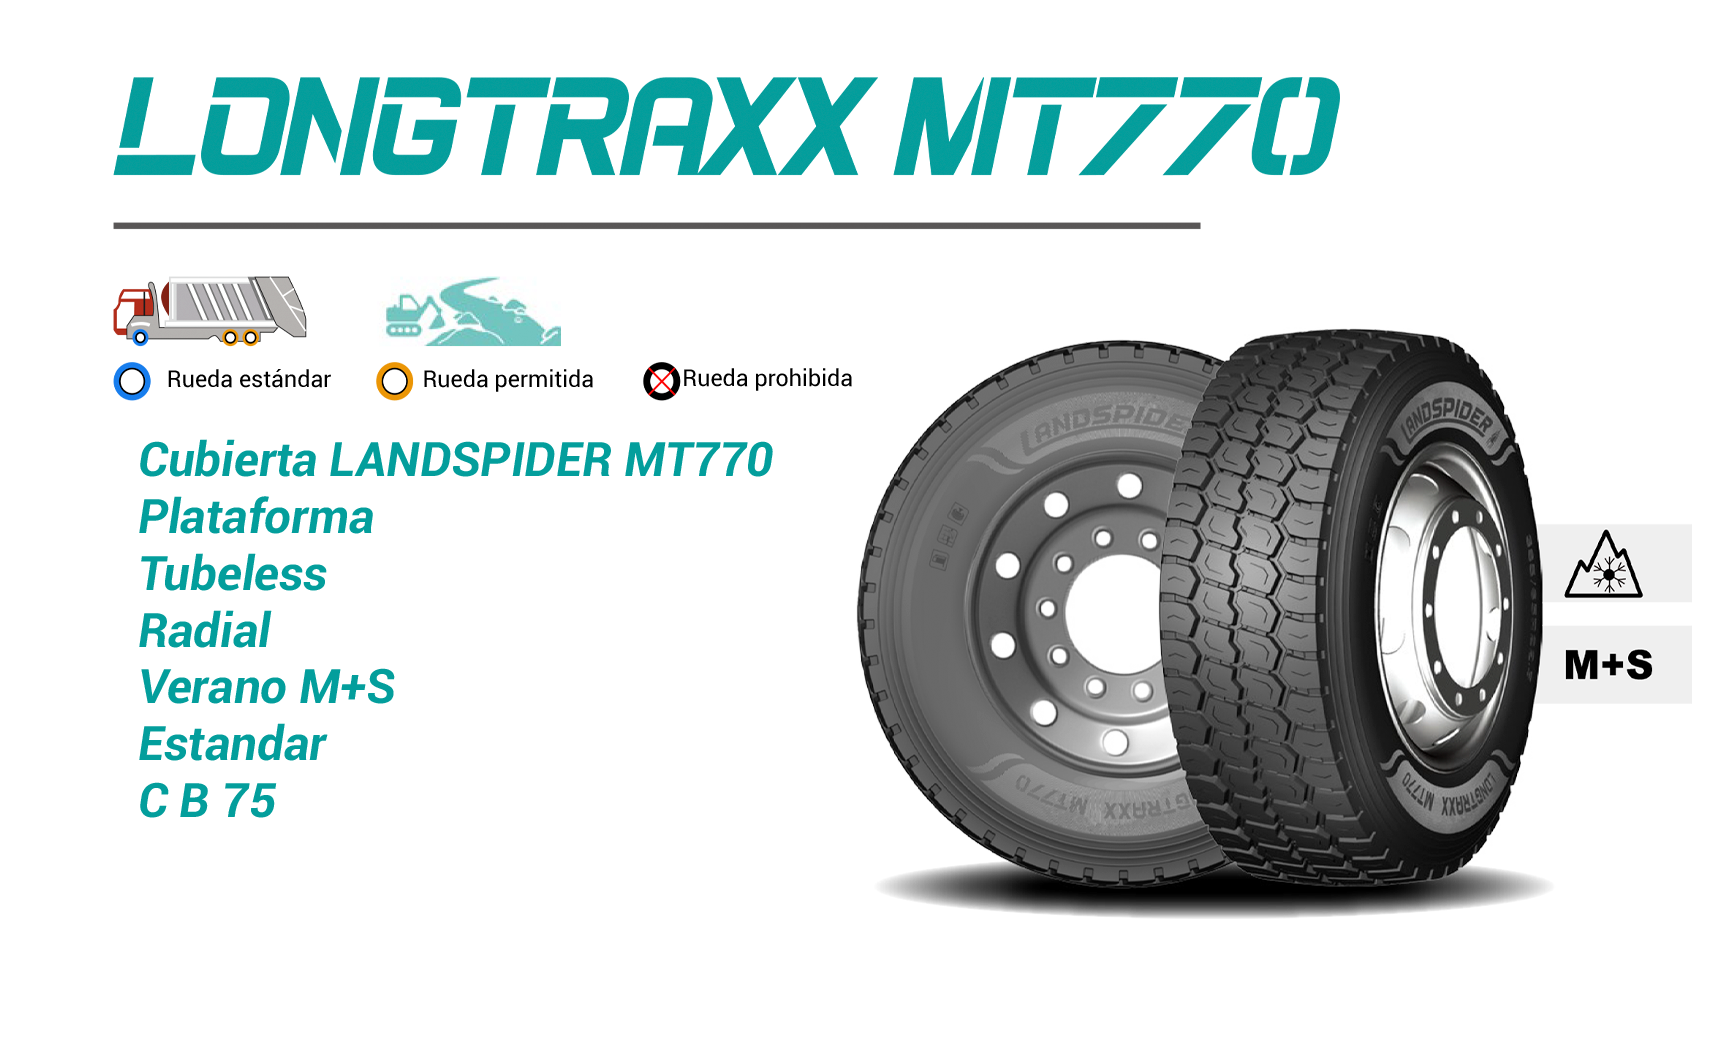 Neumático Landspider MT770